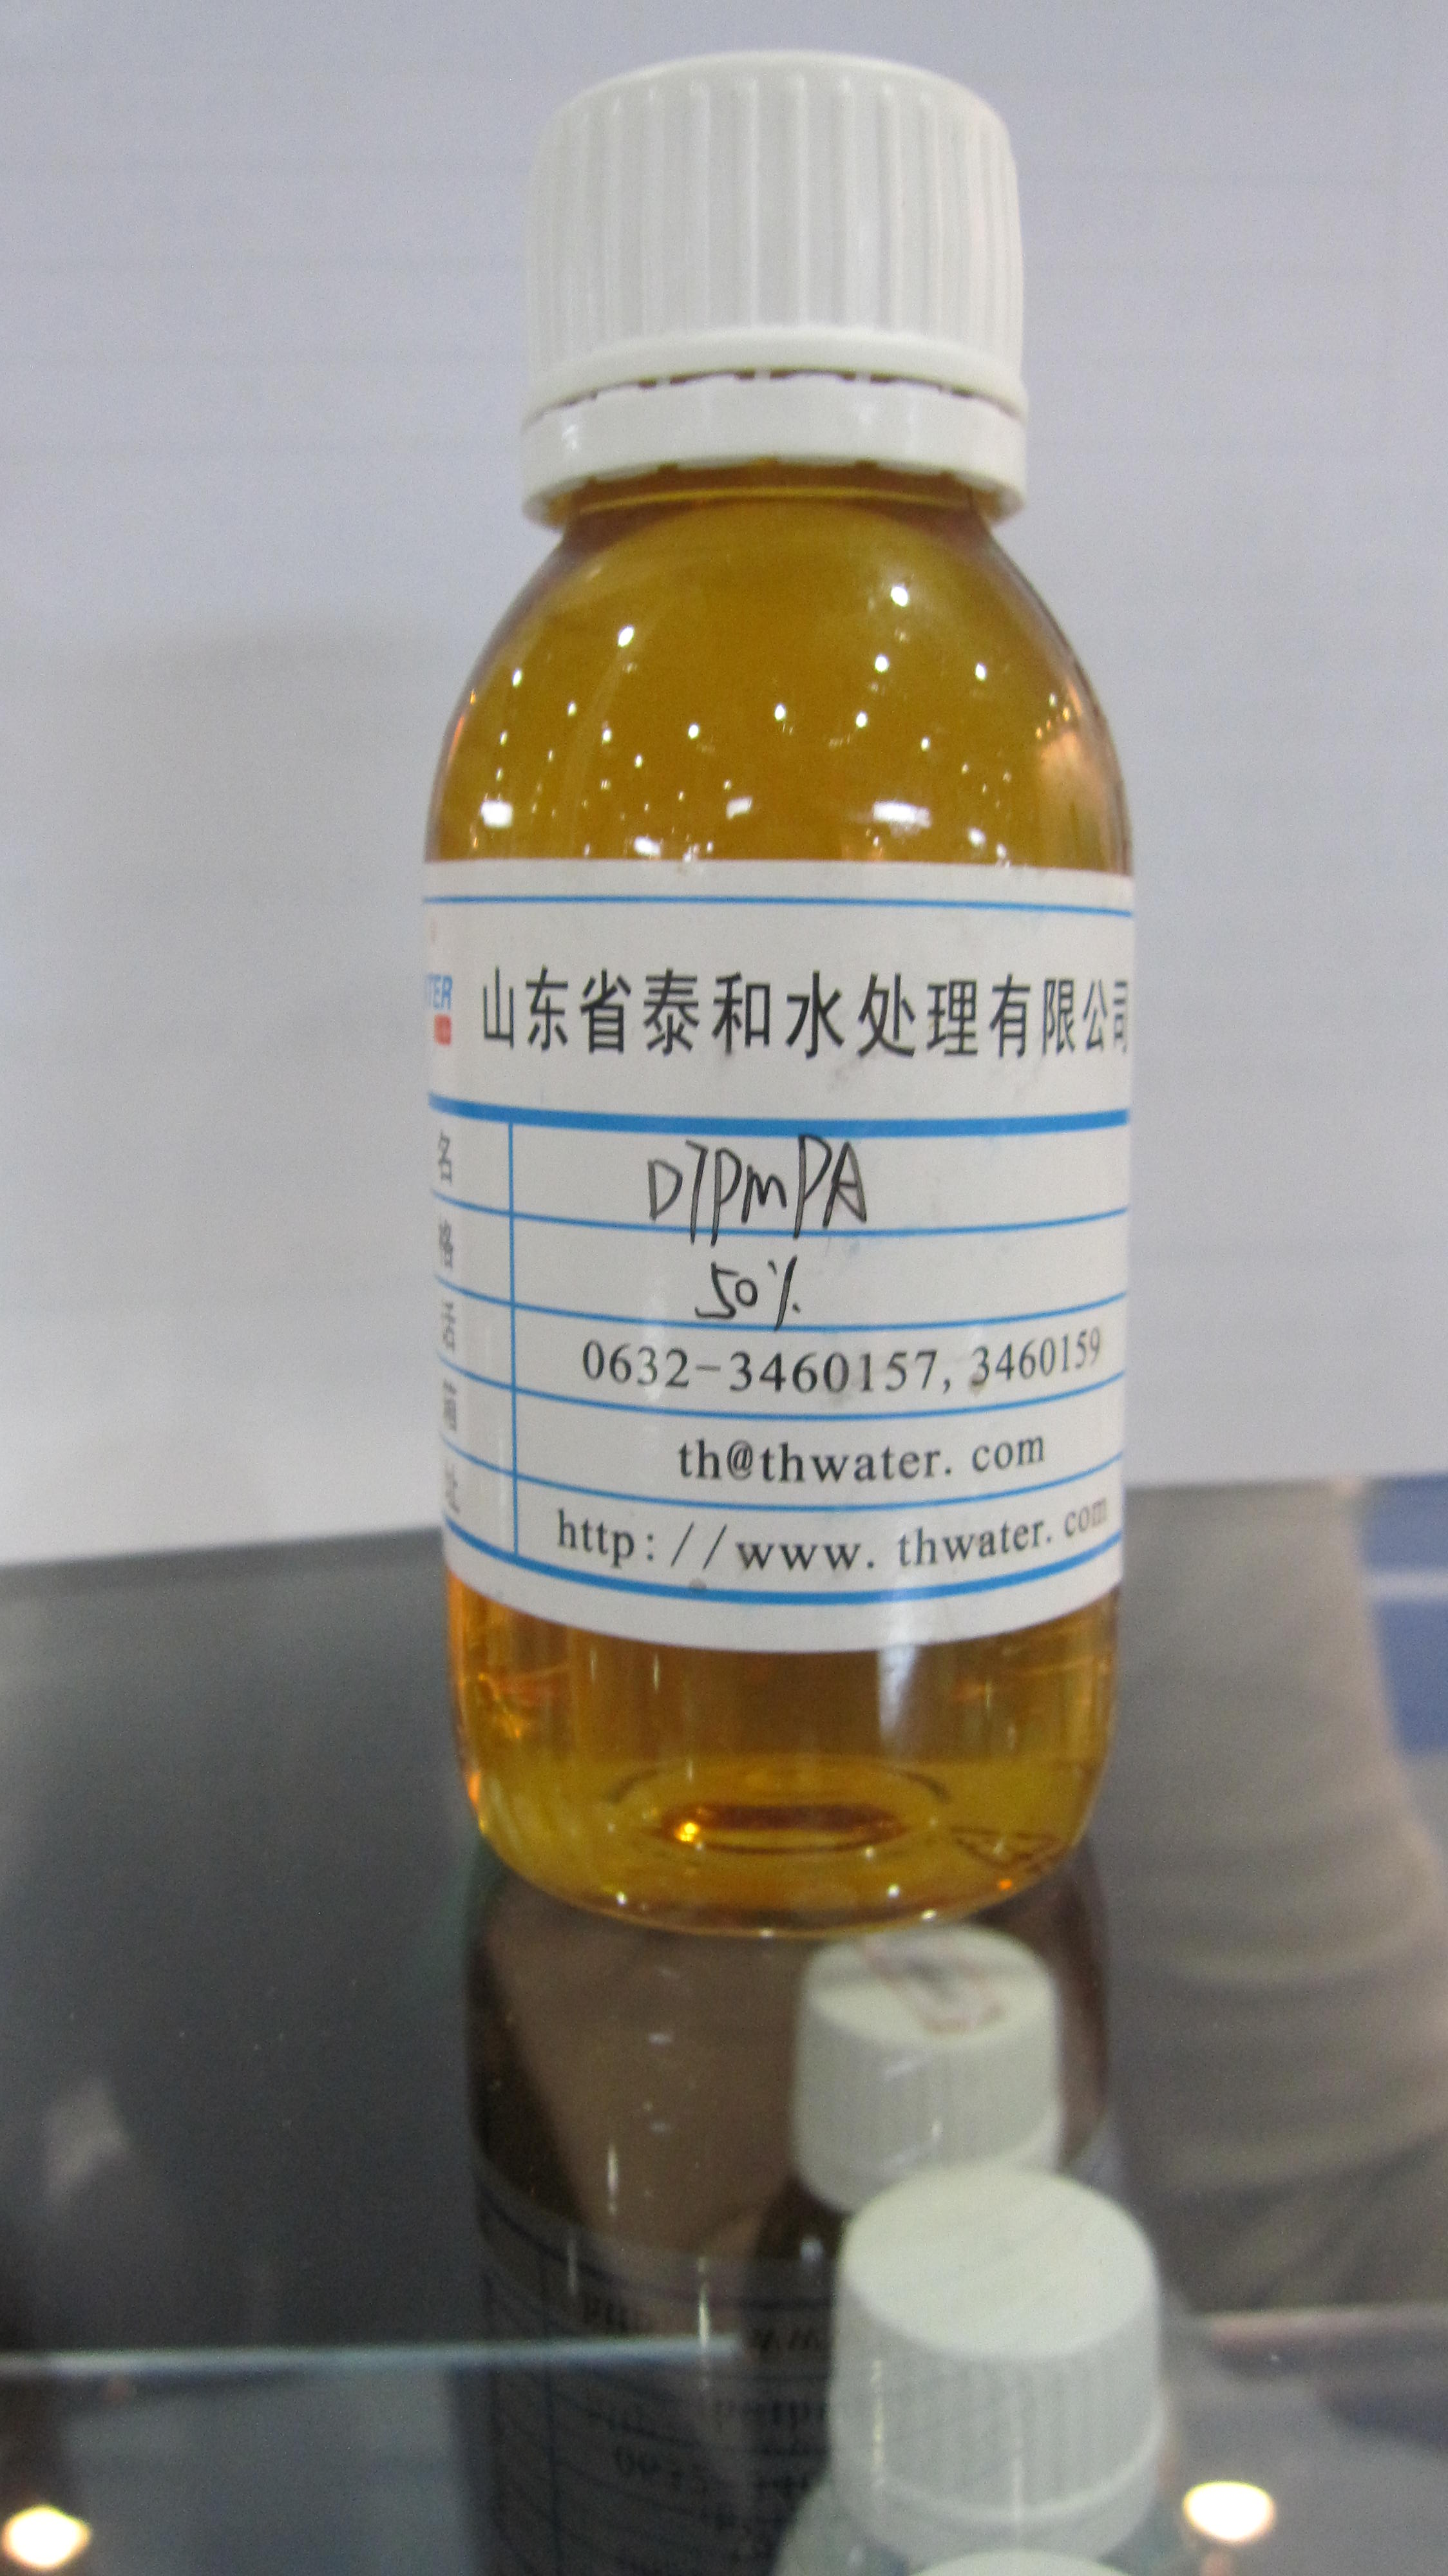 Triamine Penta (Methylene Phosphonic Acid) (DTPMPA)